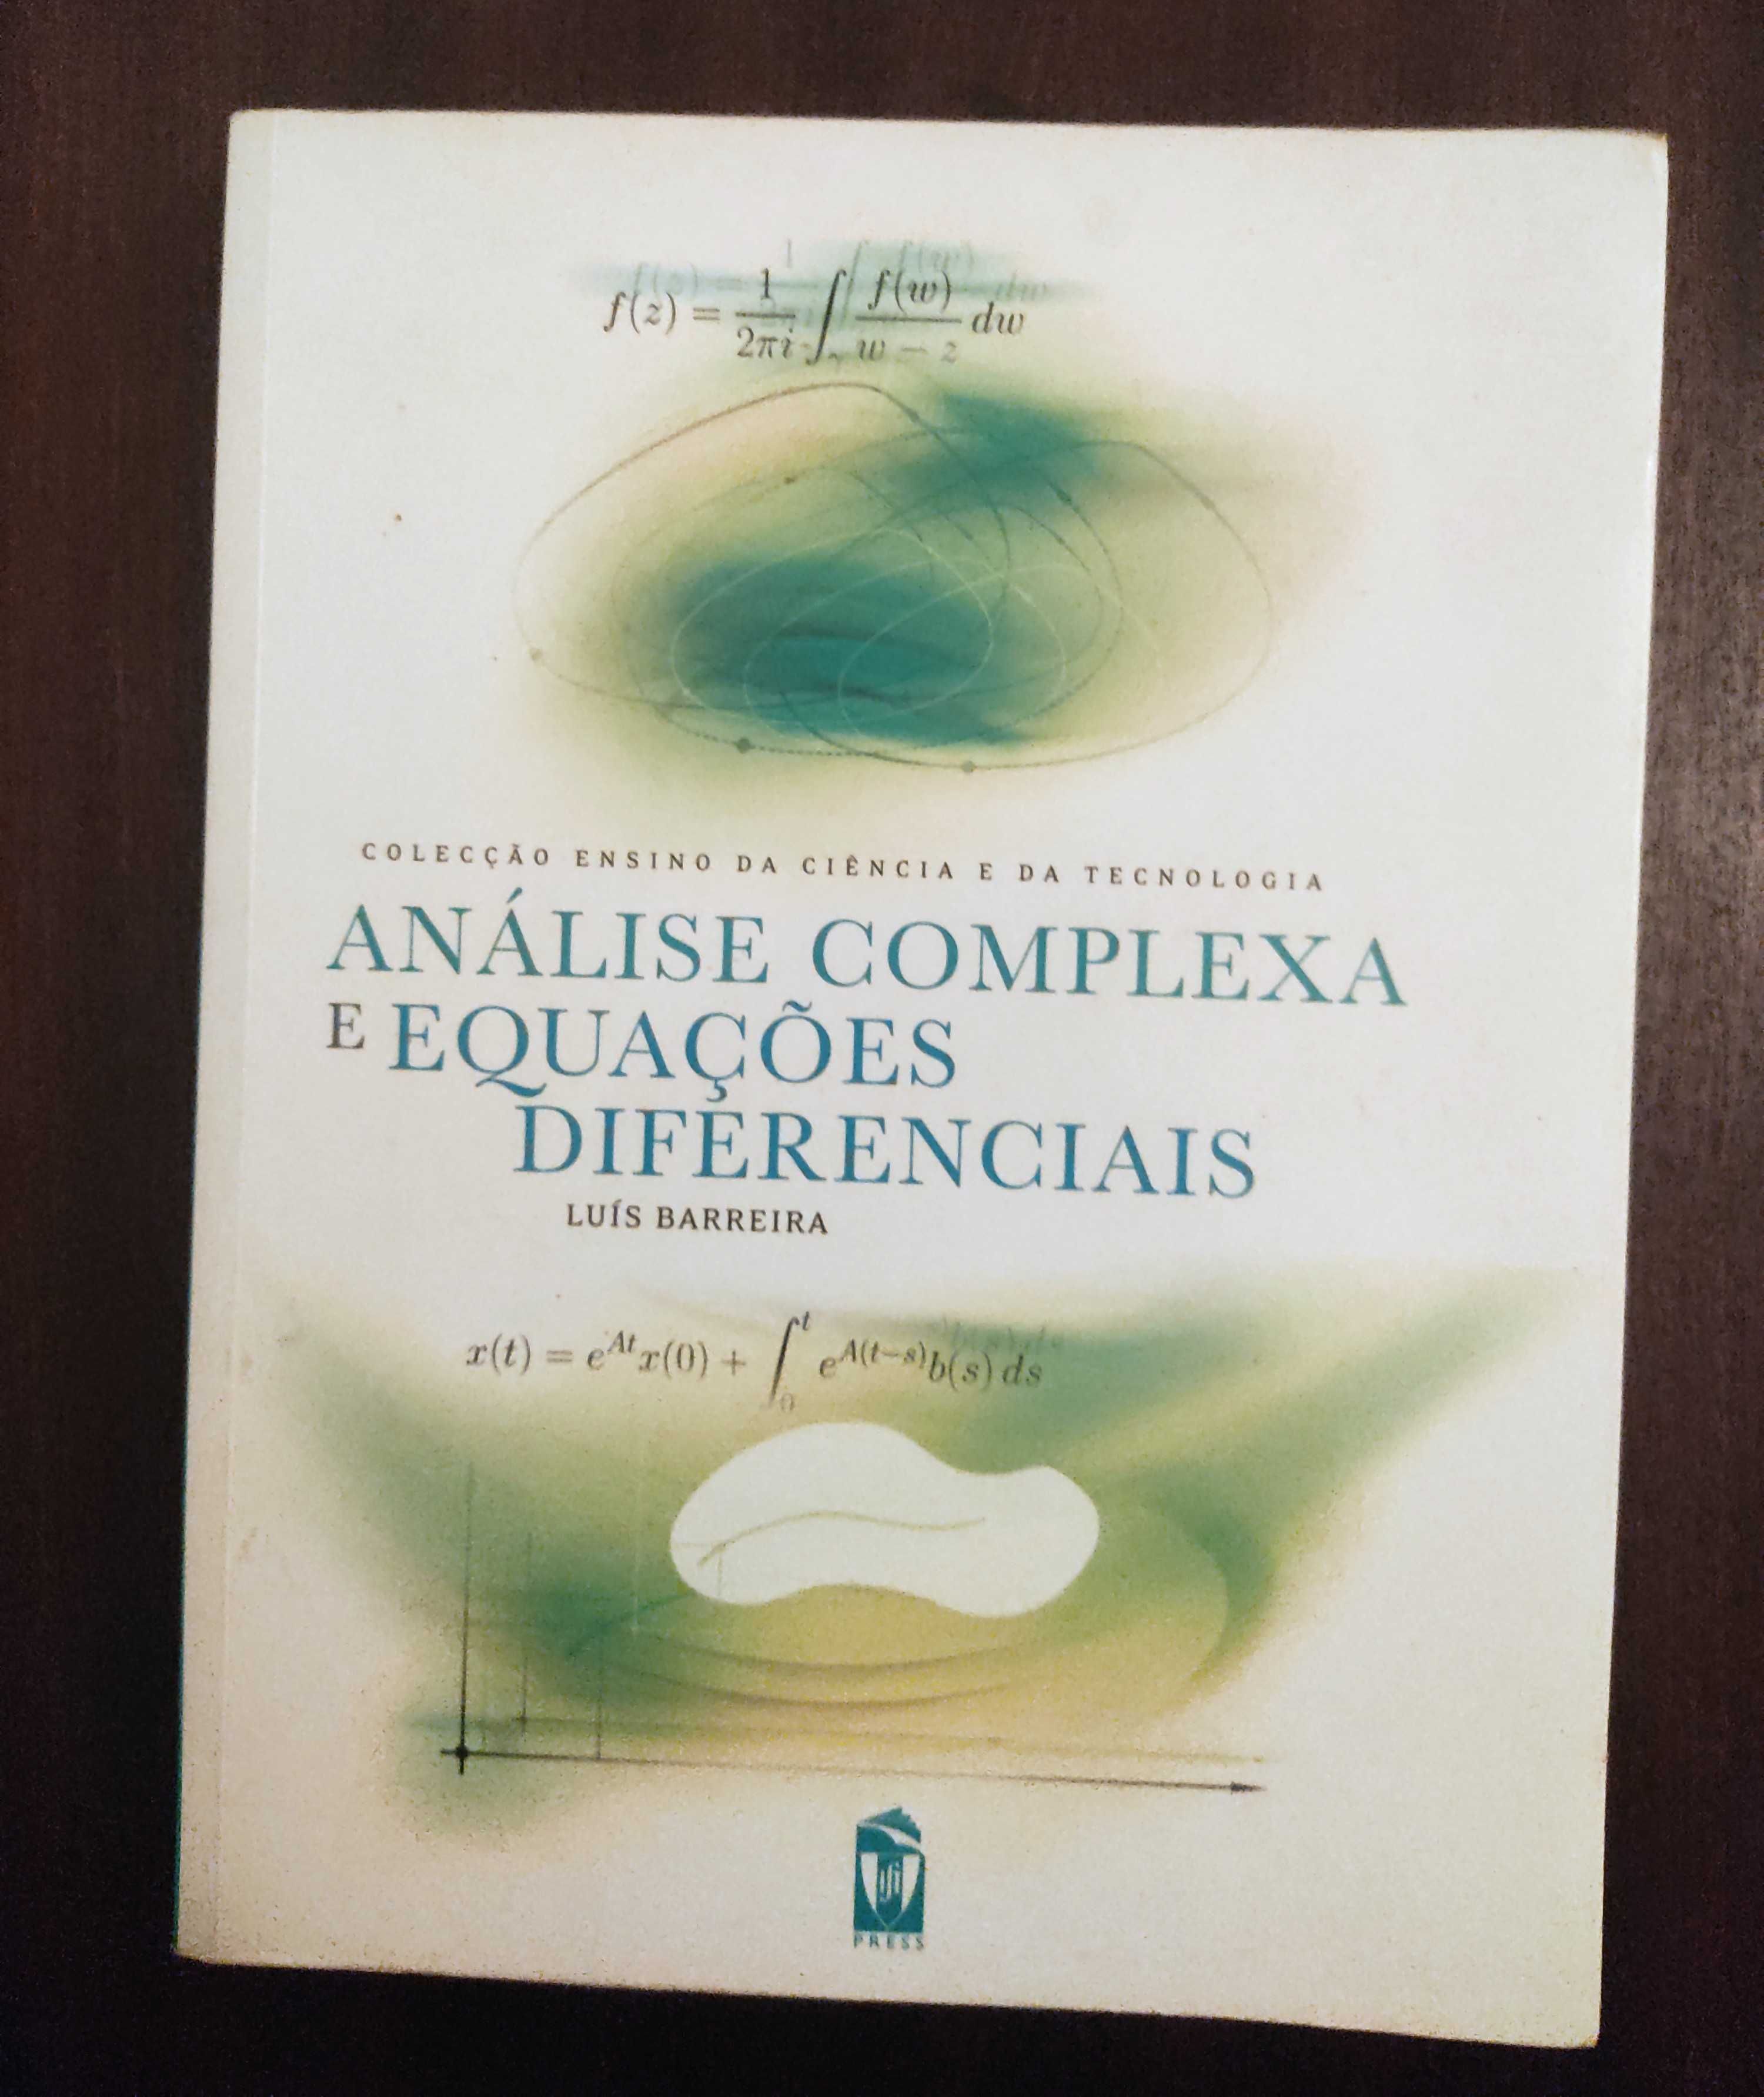 Livro "Análise Complexa e Equações Diferenciais" de Luís Barreira